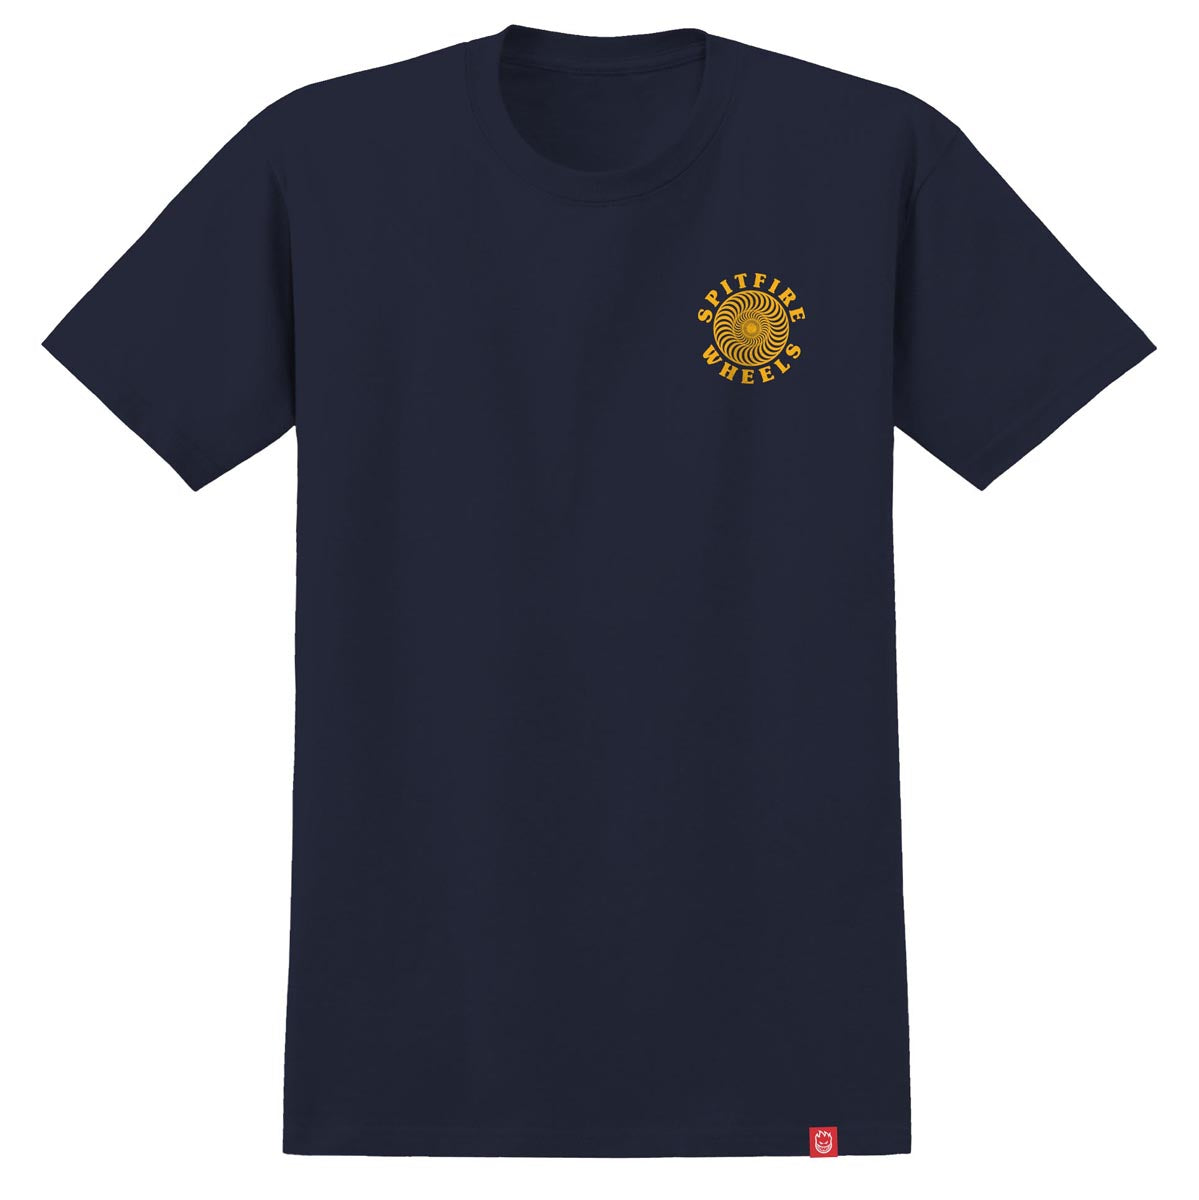 Spitfire Og Classic T-Shirt - Navy/Gold image 2